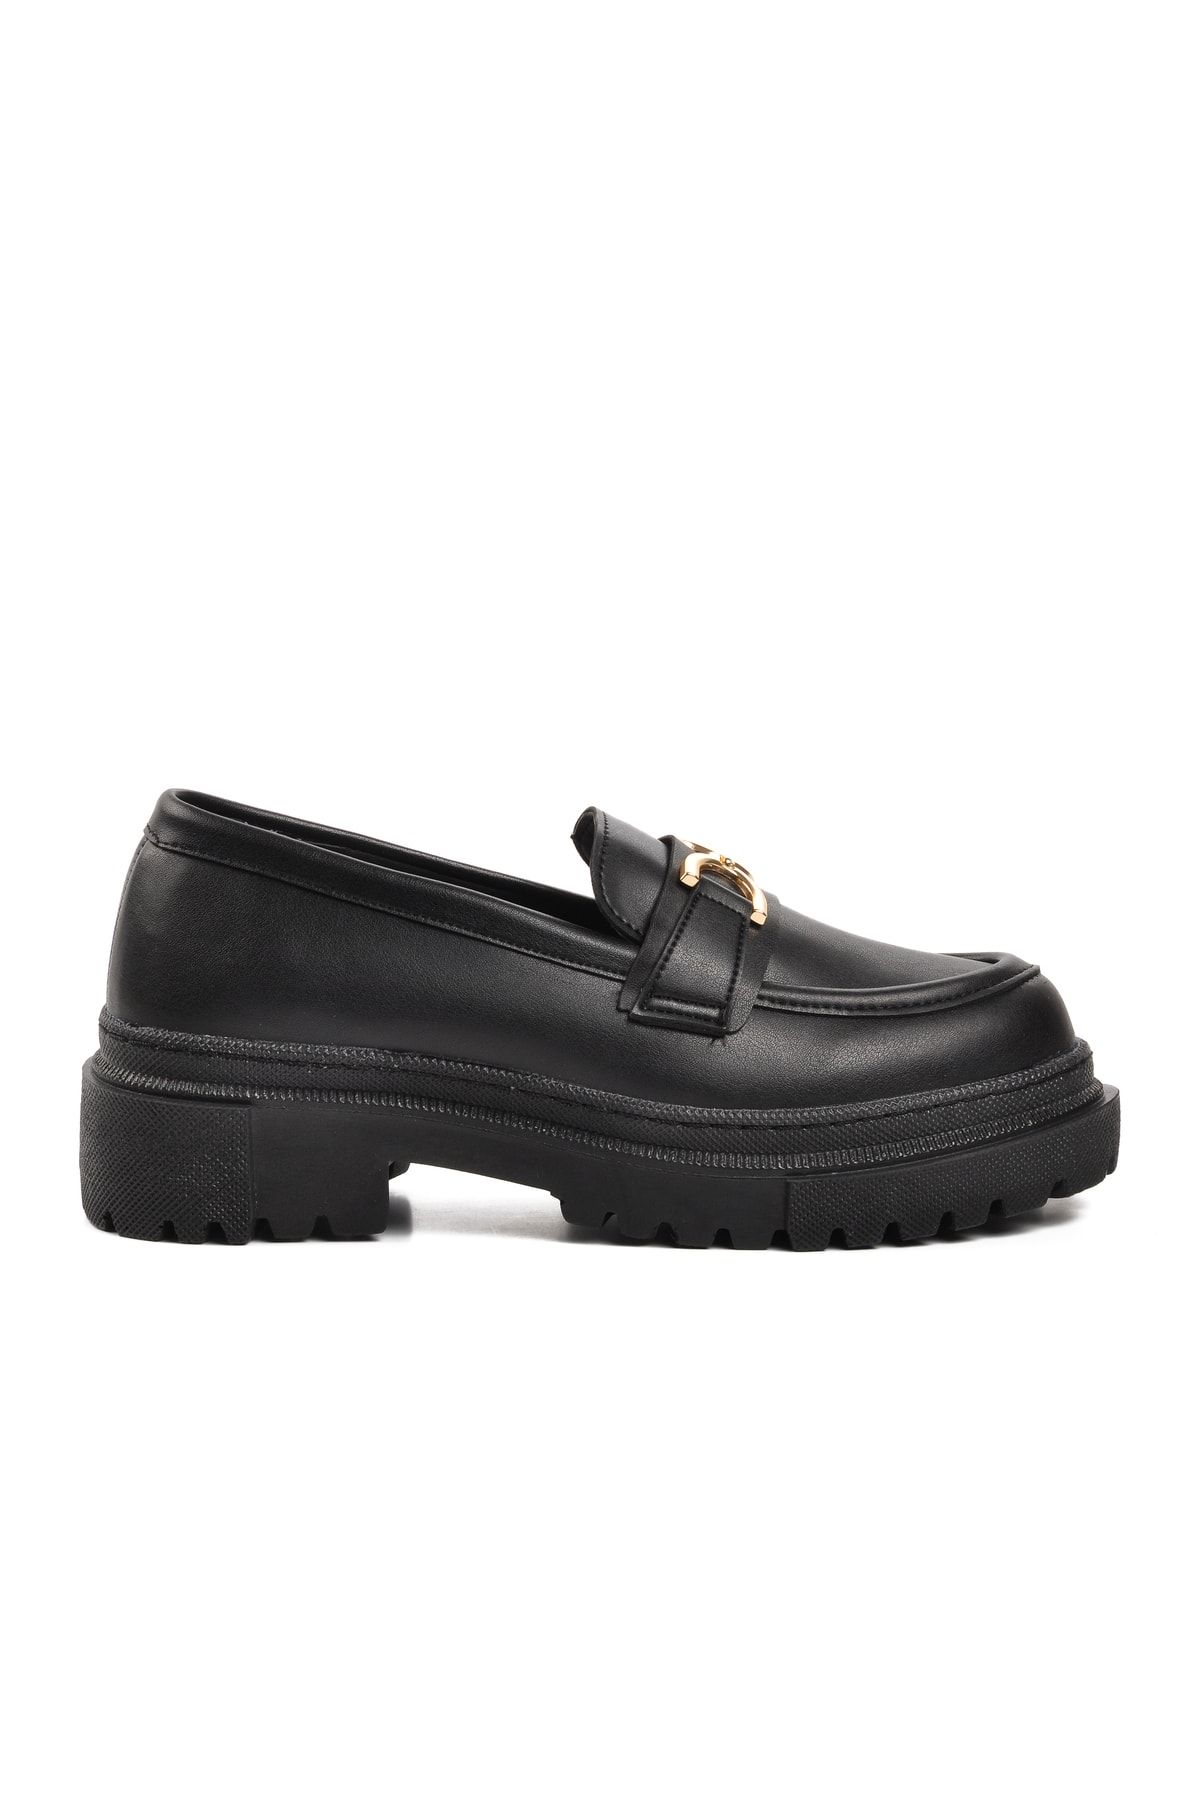 WALKWAY Wlky-16 Siyah Kadın Loafer Ayakkabı